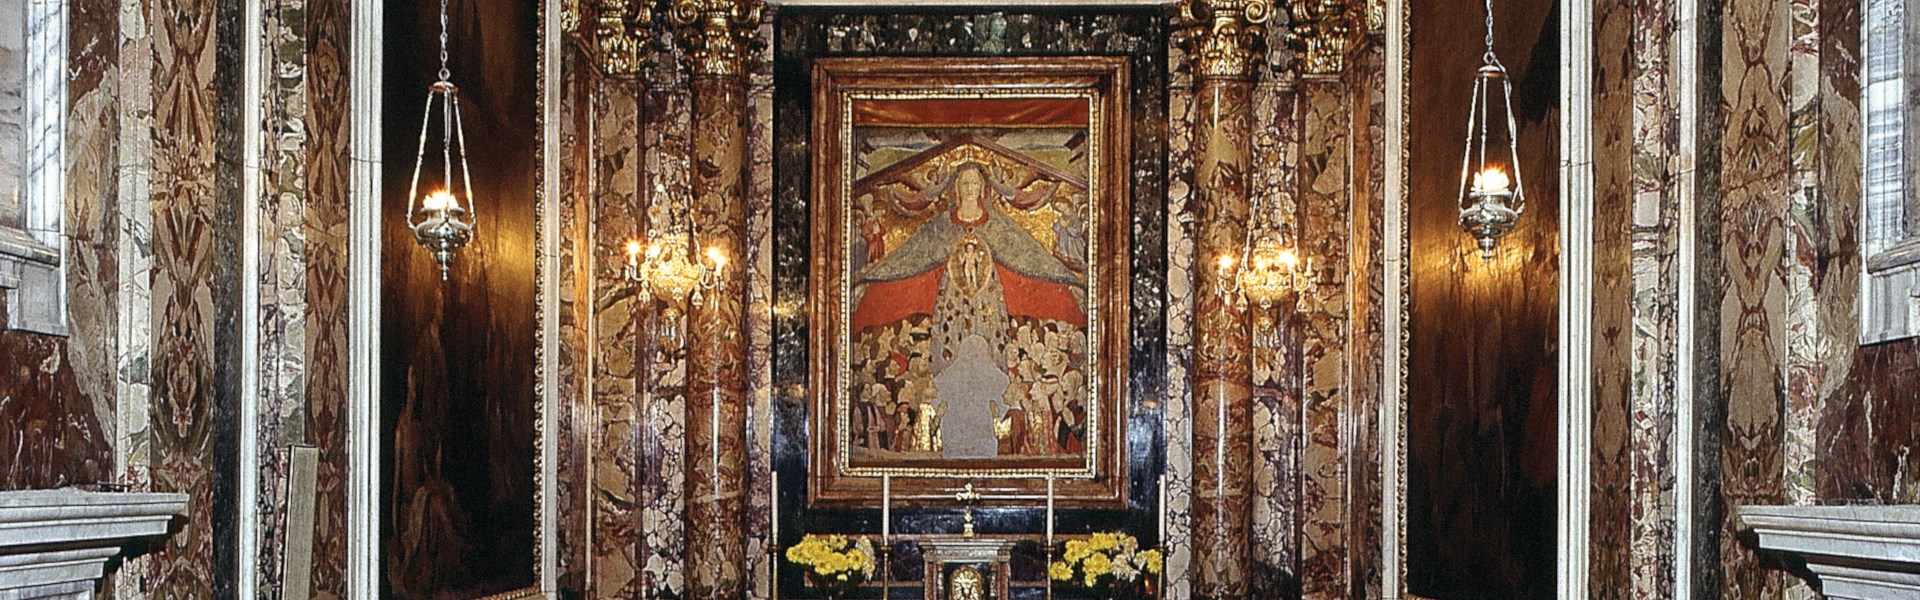 Jesi - Santuario della Madonna delle Grazie - interno